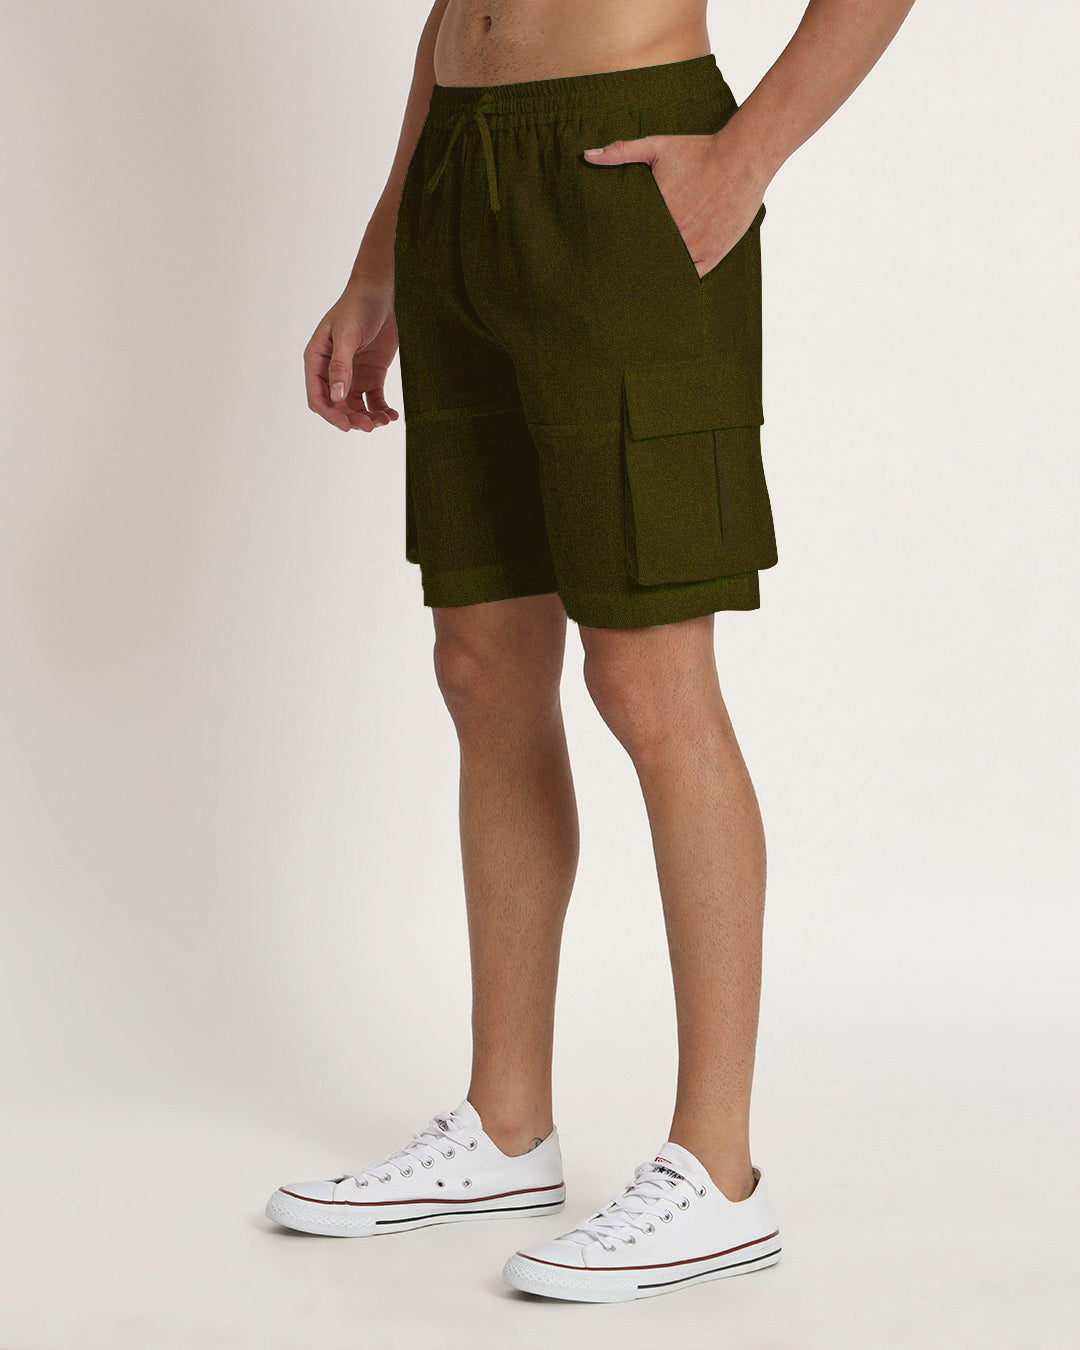 Slub Comfort Cargo Olive Green Men's Shorts